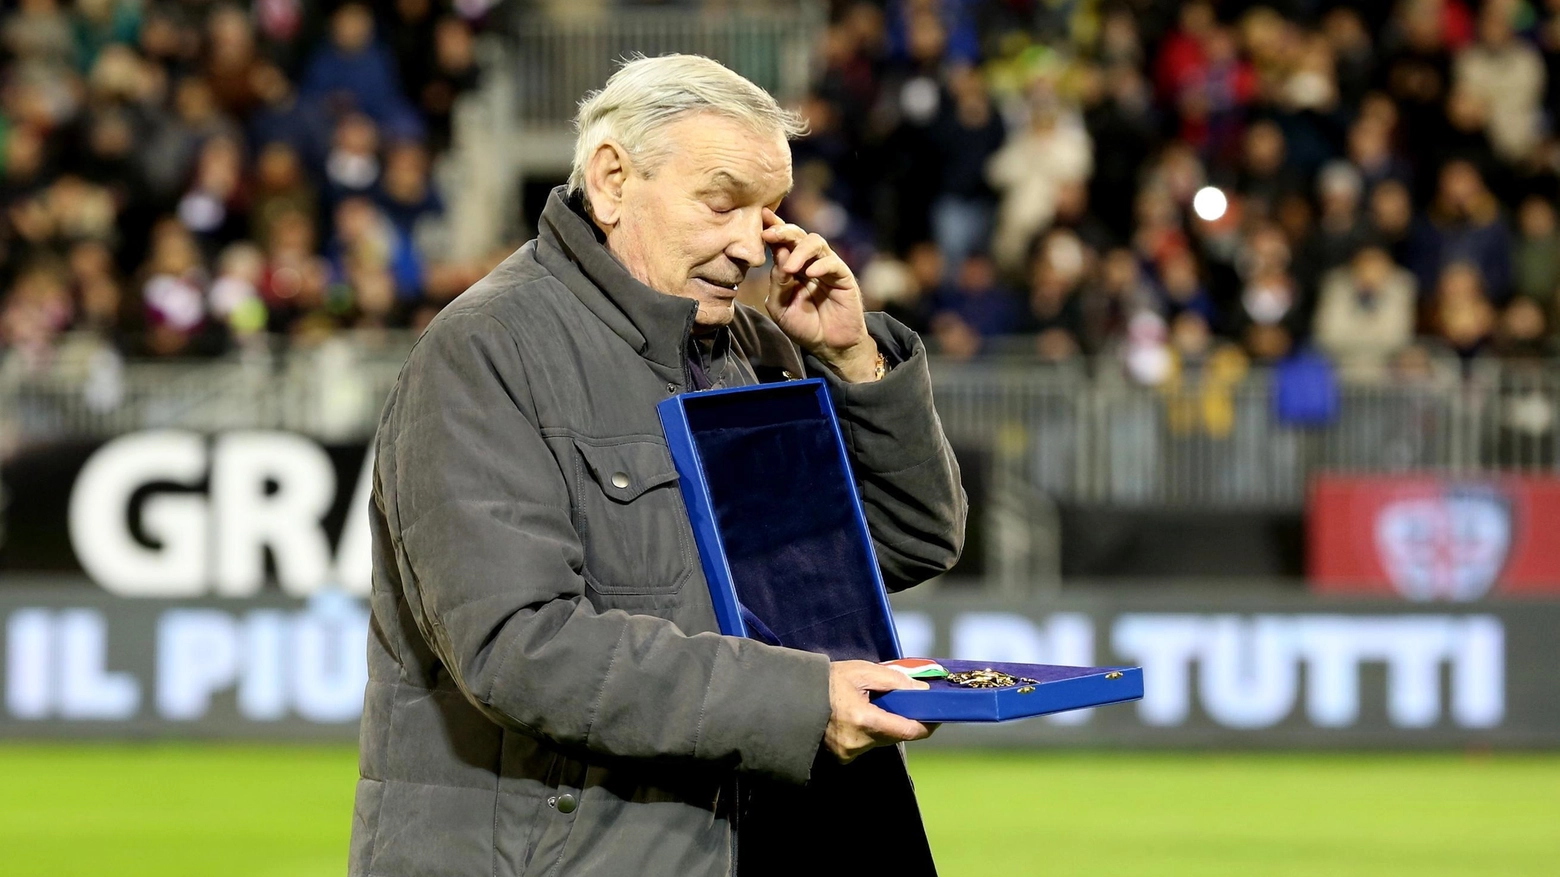 Gigi Riva, leggenda del calcio italiano e storico attaccante del Cagliari, è deceduto all'età di 79 anni. Conosciuto per il suo record di gol con la nazionale e con il Cagliari, lascia un'eredità indelebile nel mondo del calcio.